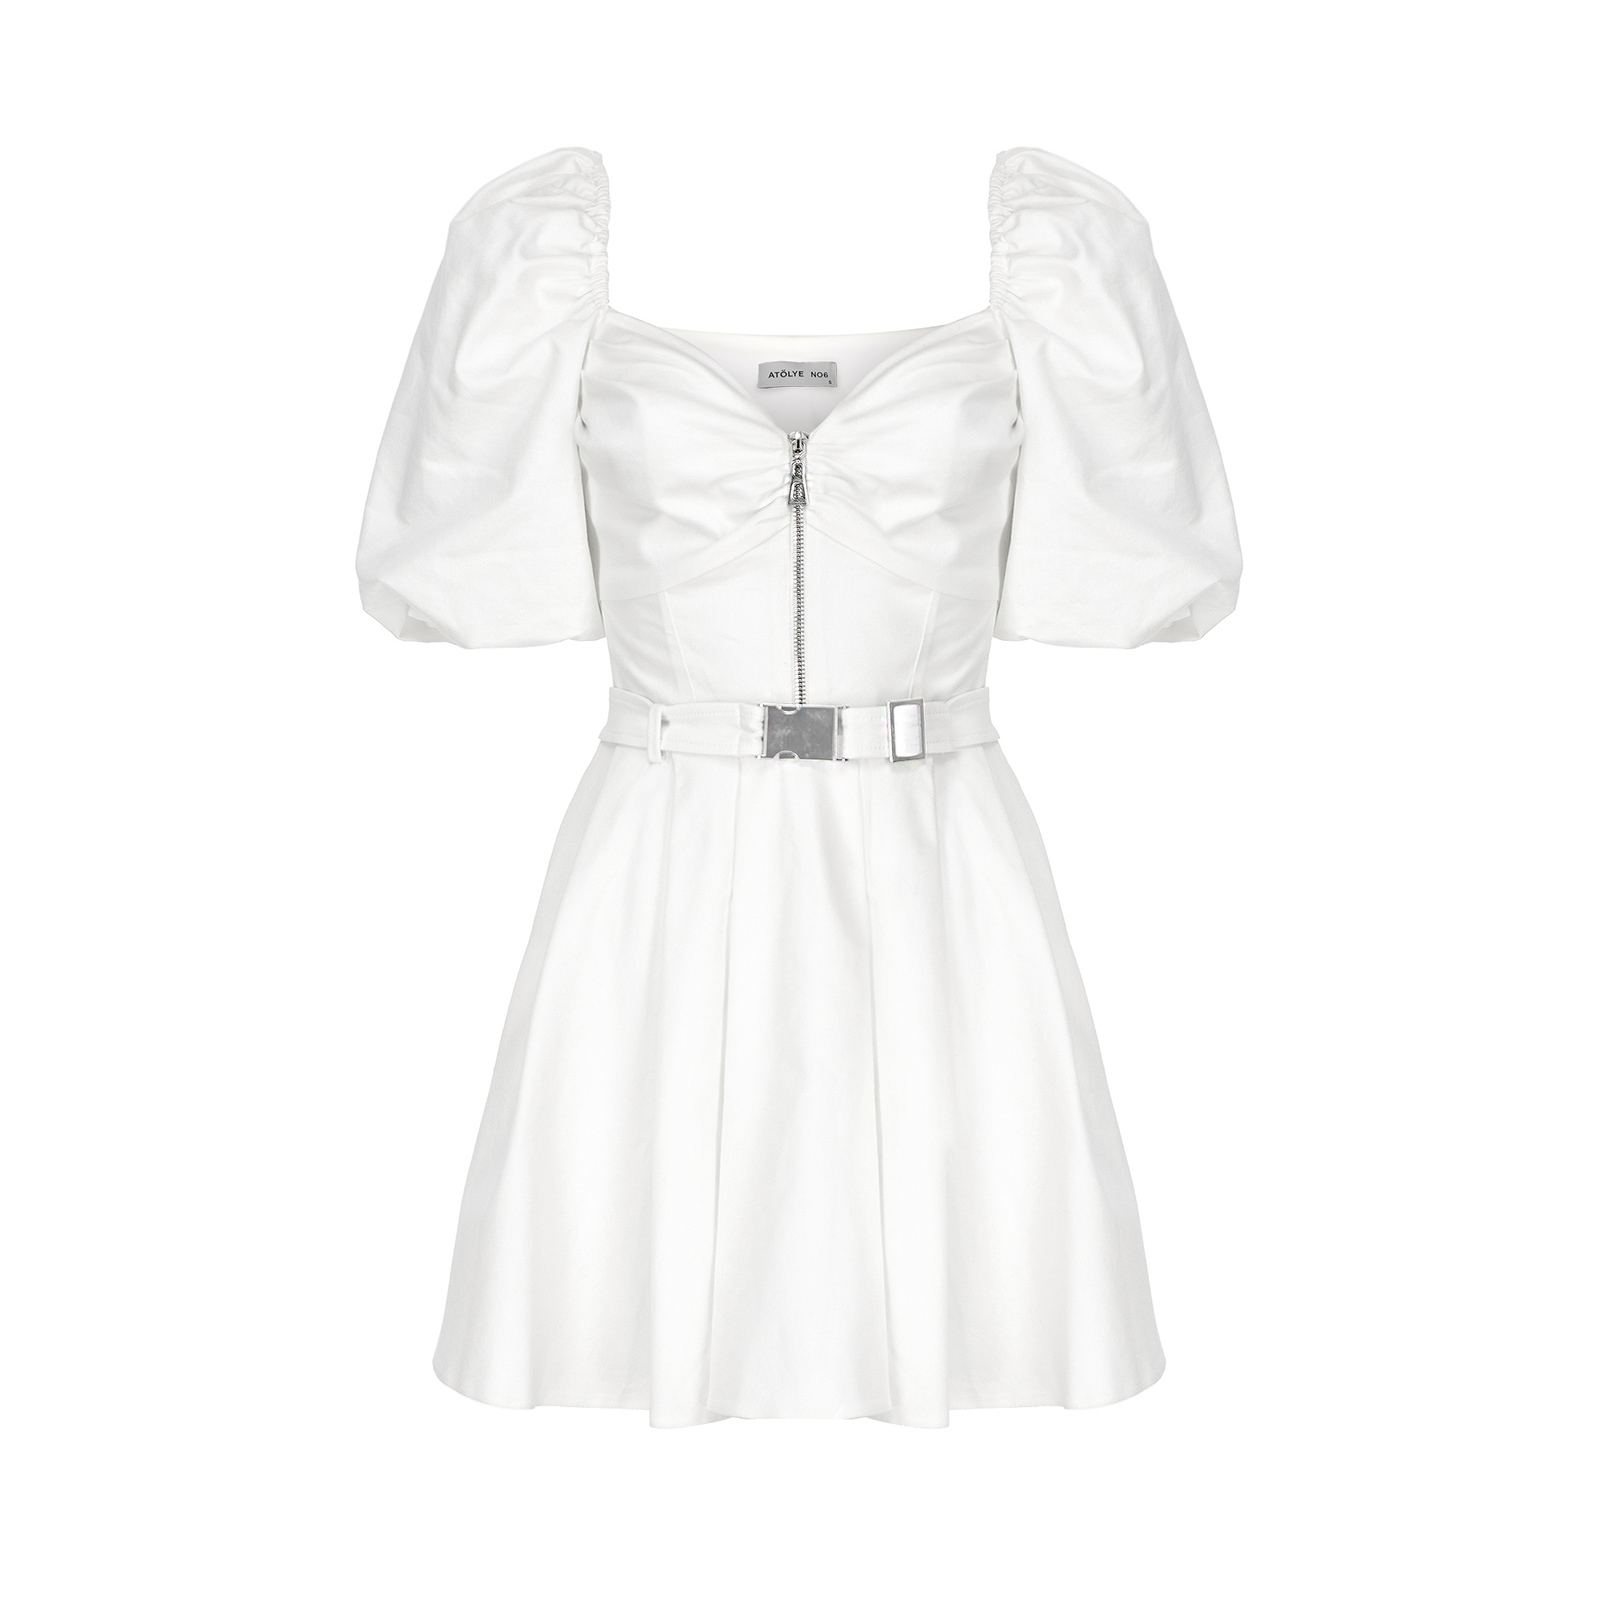 beyaz-elbise-fotograf-cekimi Tekstil Fotoğraf Çekimi